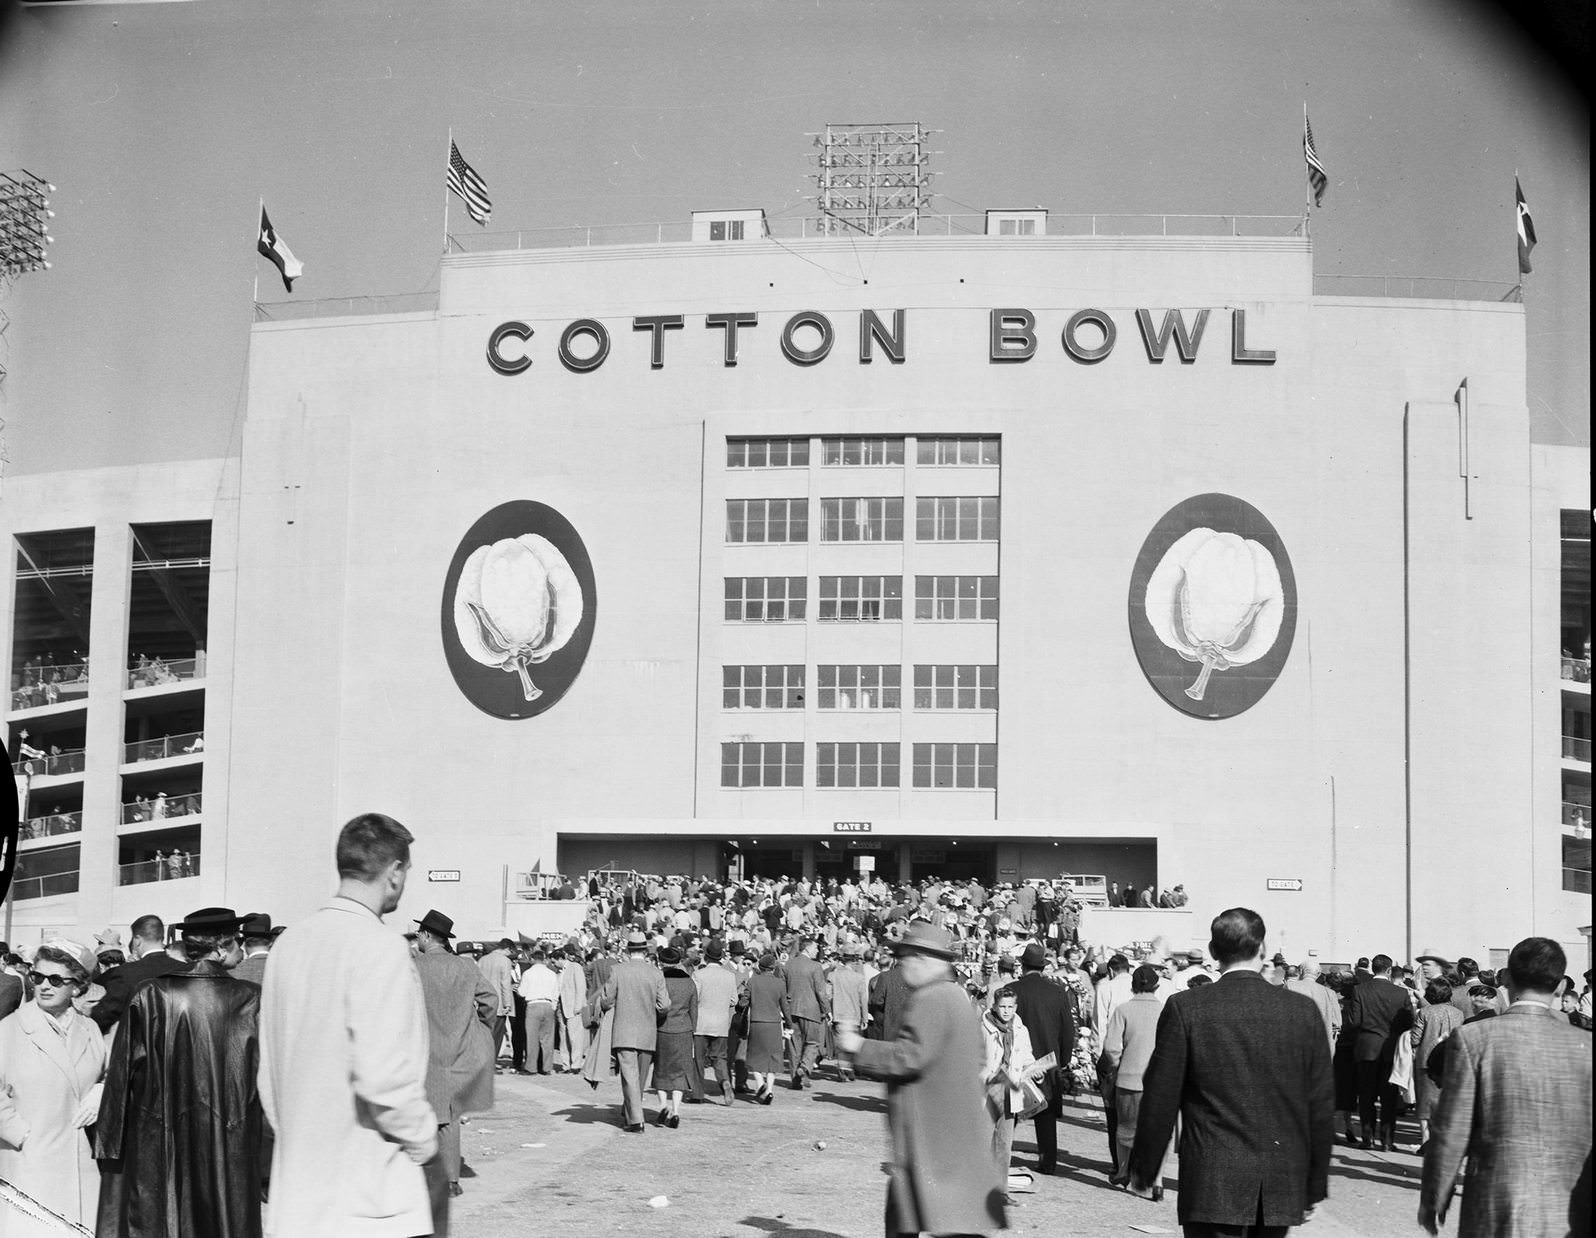 Cotton Bowl, Dallas, Texas, 1950